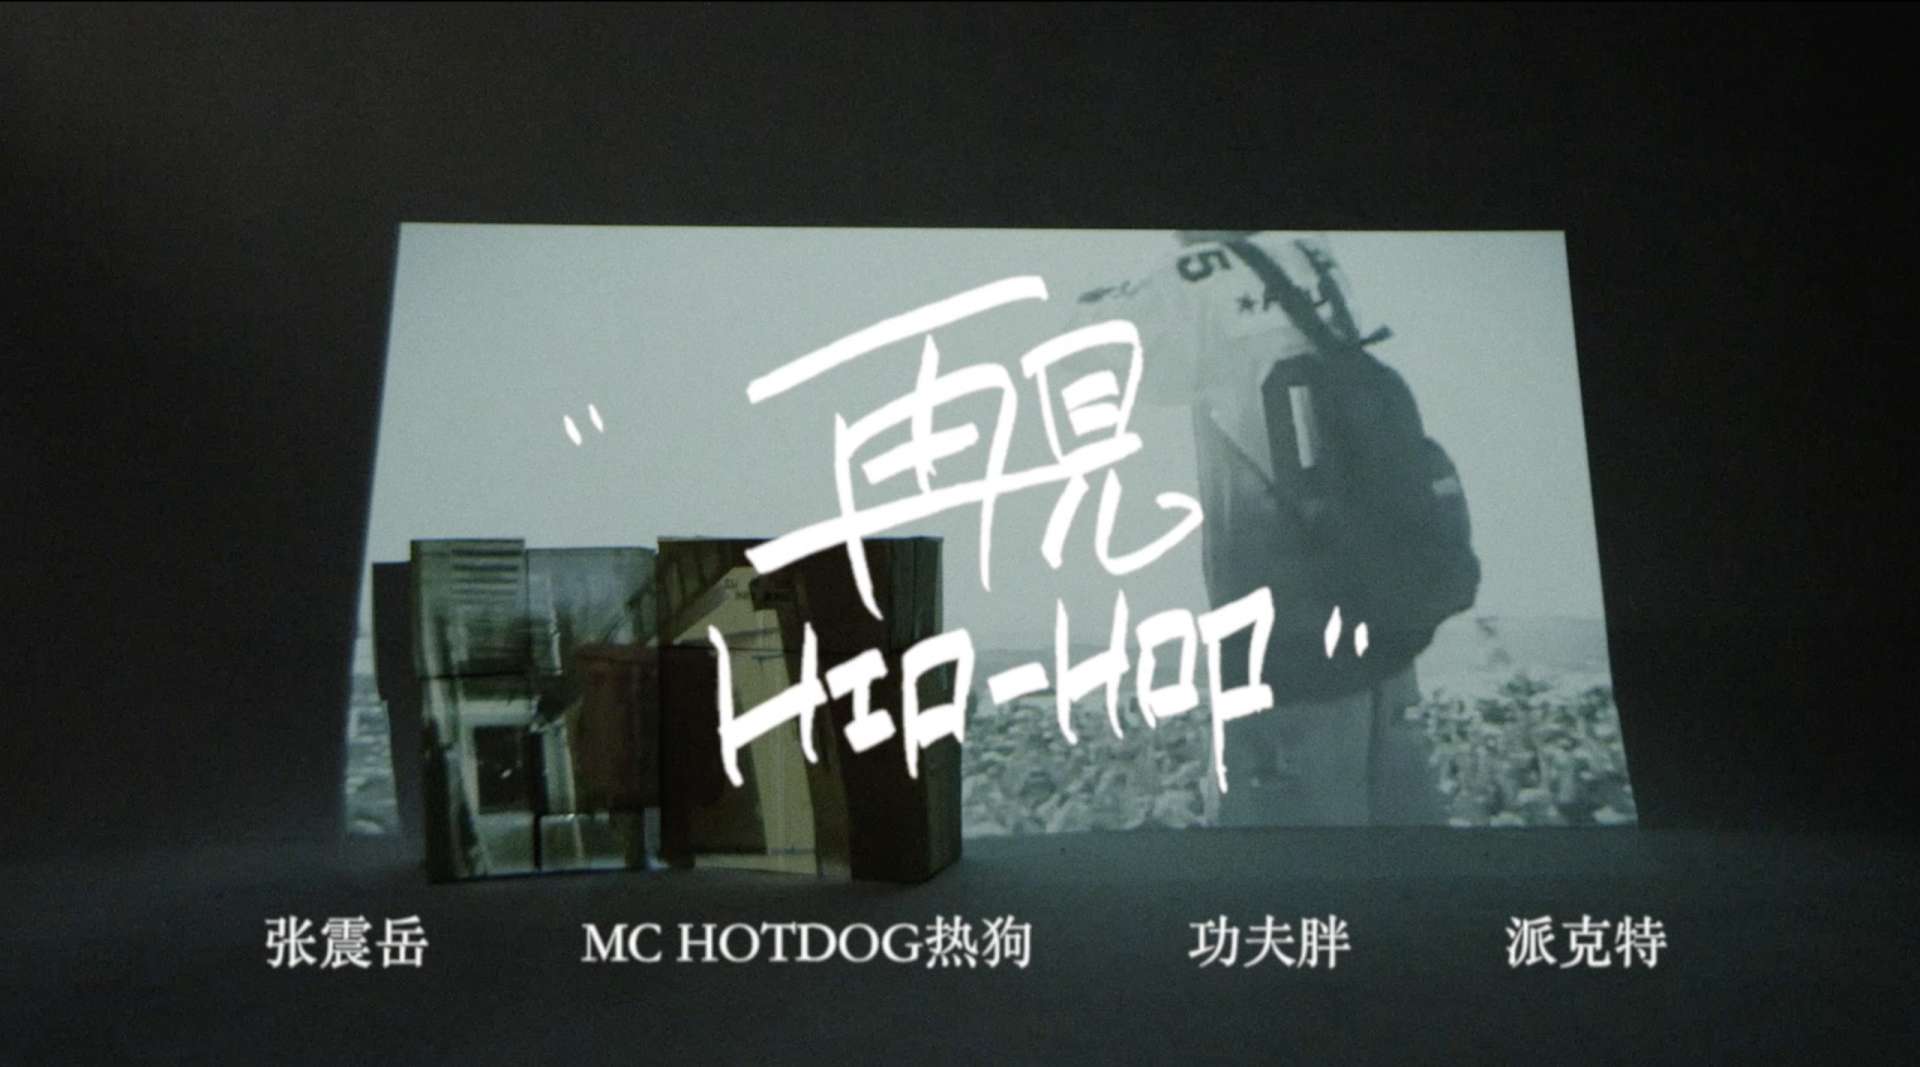 2018 张震岳/ MC HOTDOG/ 功夫胖/ 派克特 - 《再见Hip-Hop》 MV